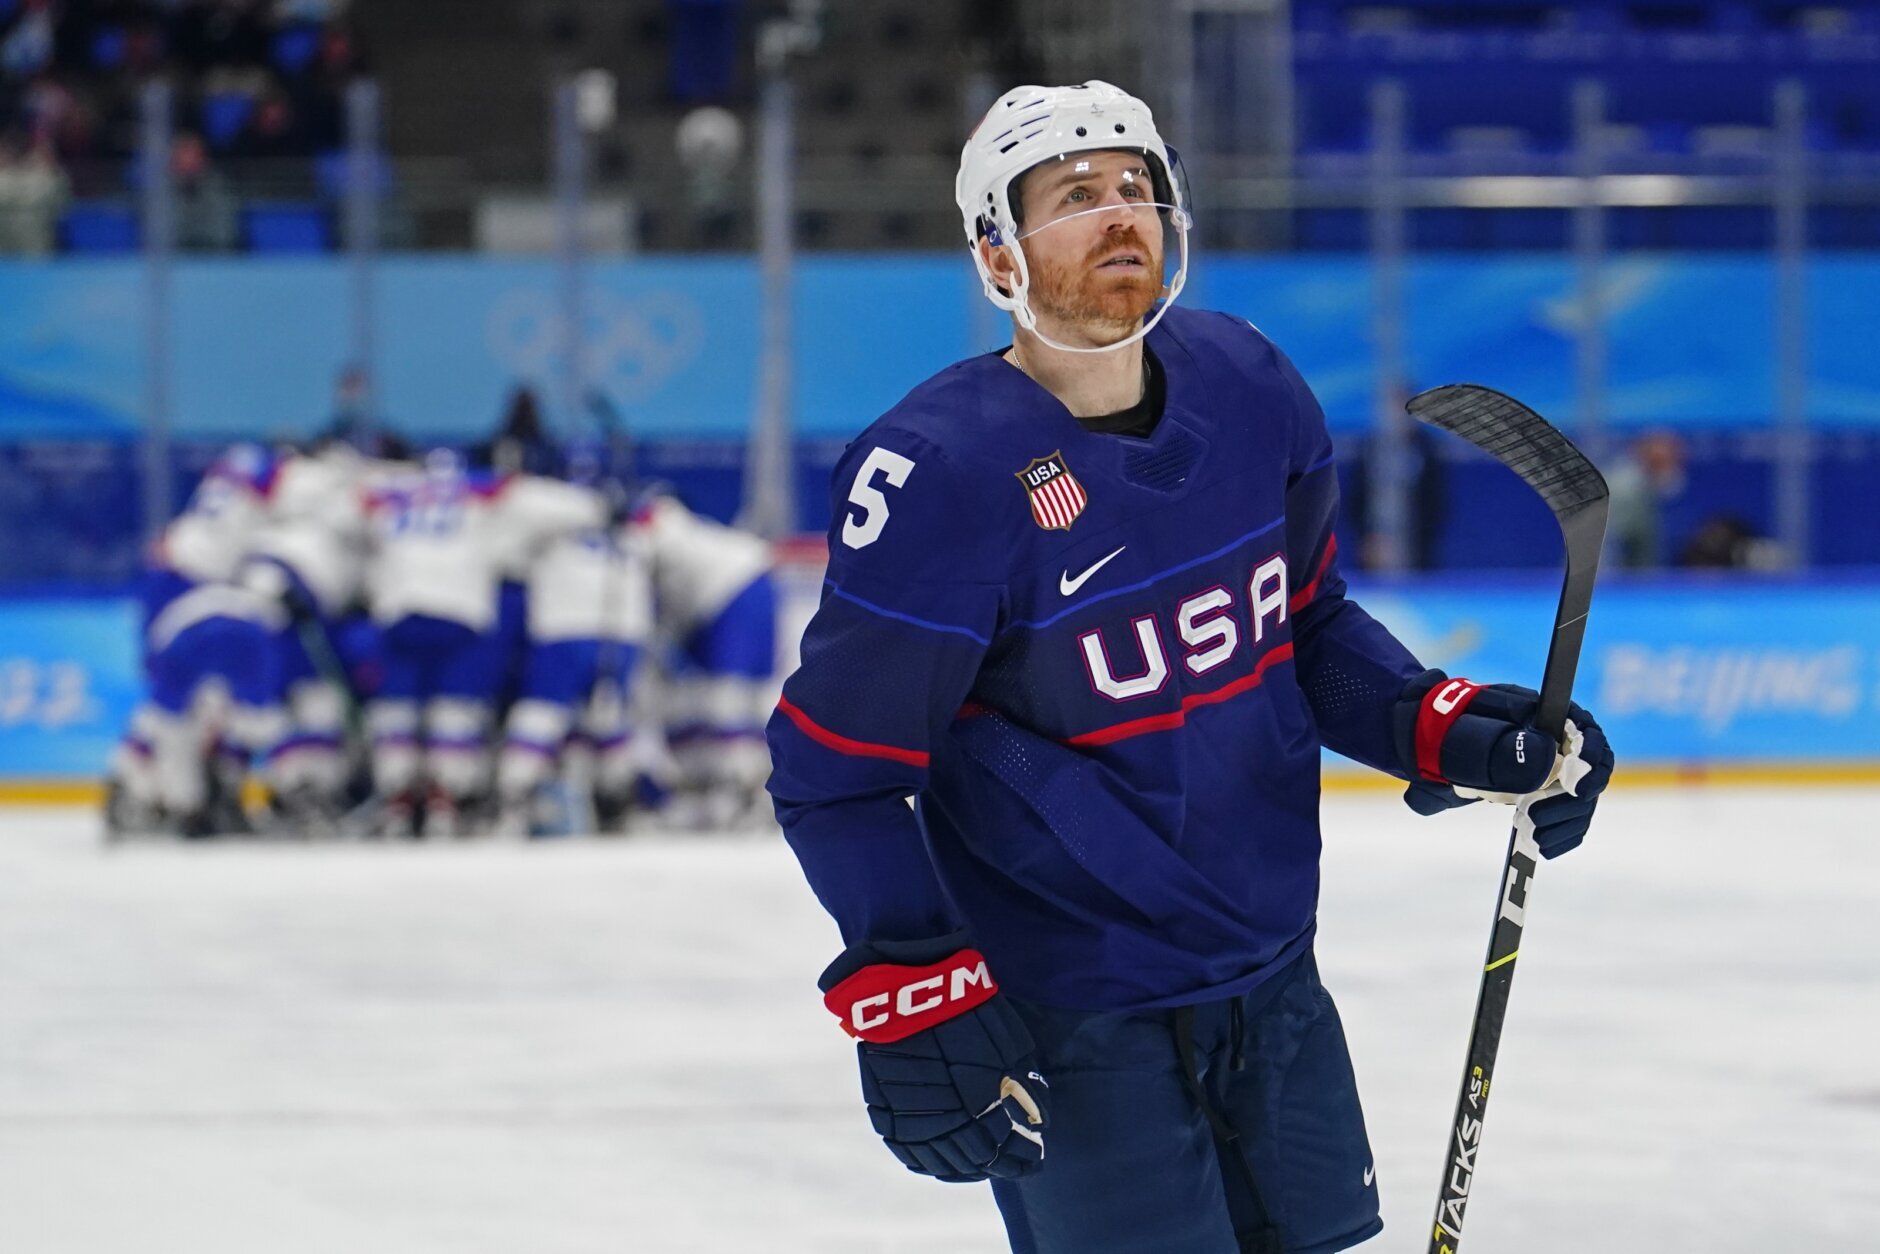 U.S. men's hockey team loses to Slovakia in shootout, exits Olympics - The  Washington Post